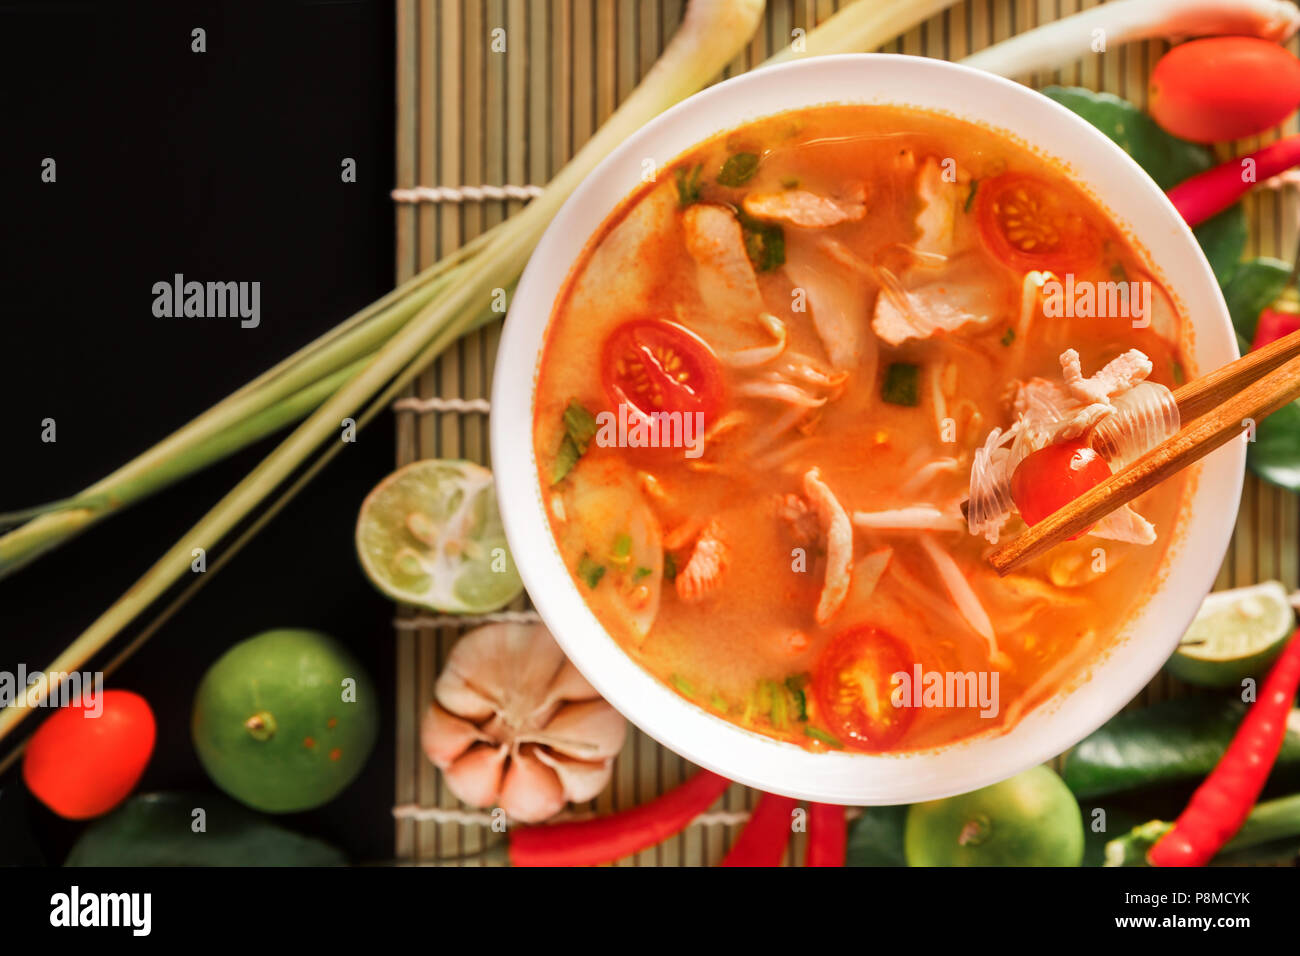 Tom Yum Gai oder würzigen Tom Yum Suppe mit Hähnchen - Authentische thailändische Küche. Mit Zutaten: Zitronengras, Galgant, kaffernlimette Blätter, frische Chilis, Stockfoto